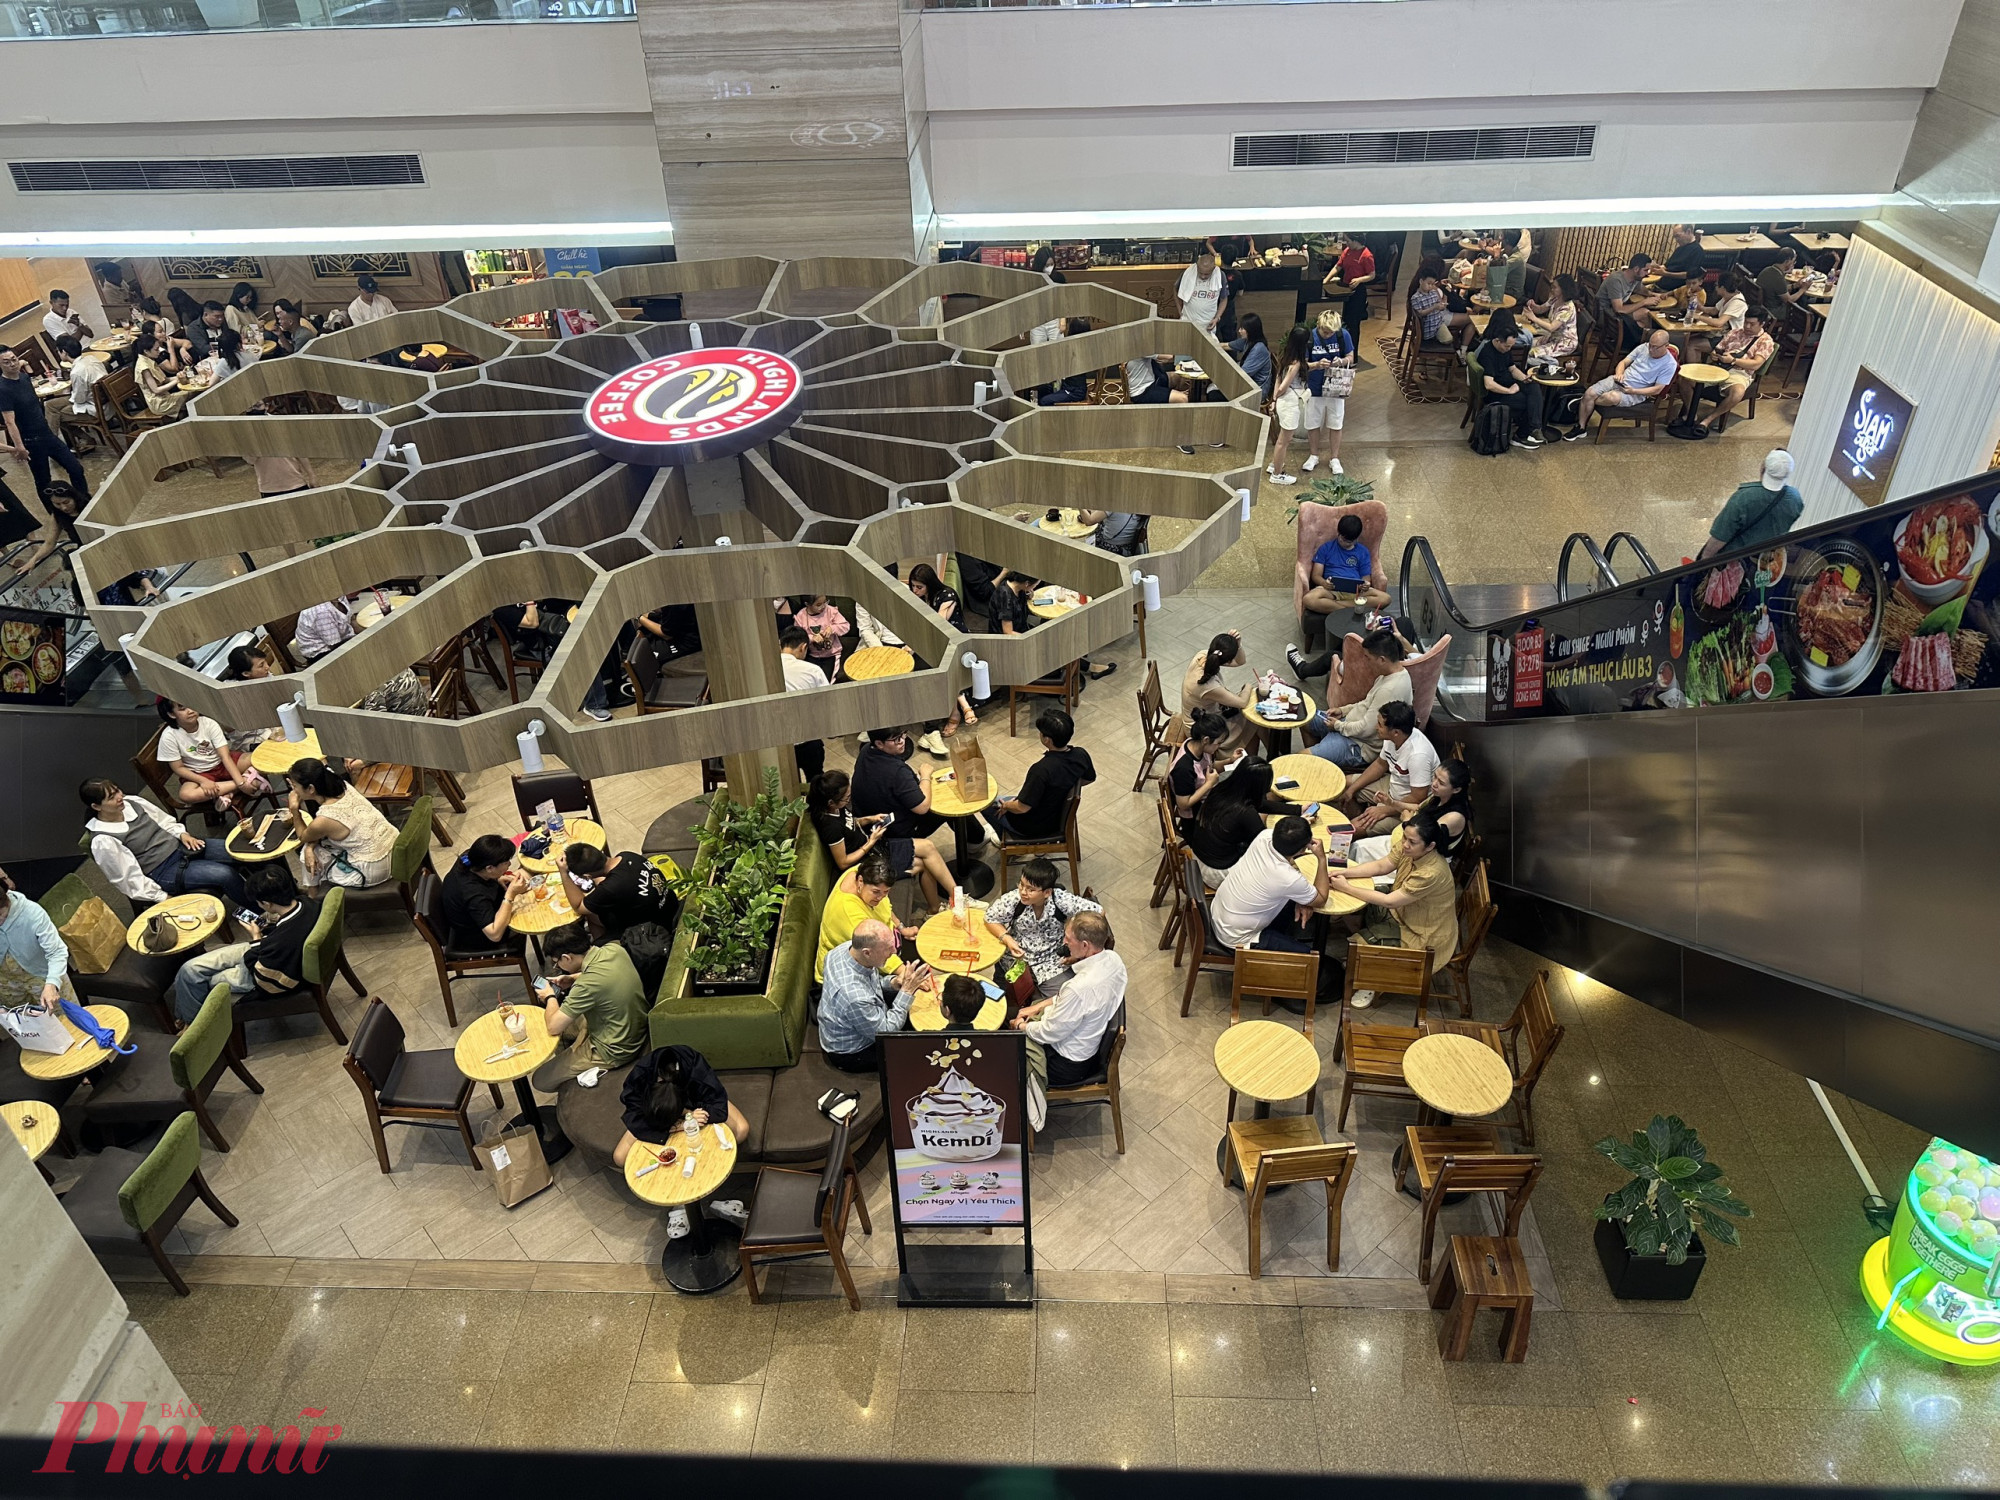 Hùng Vương Plaza (quận 5, TPHCM) cũng khá vắng khách đến tham quan mua sắm, khách chủ yếu tập trung 